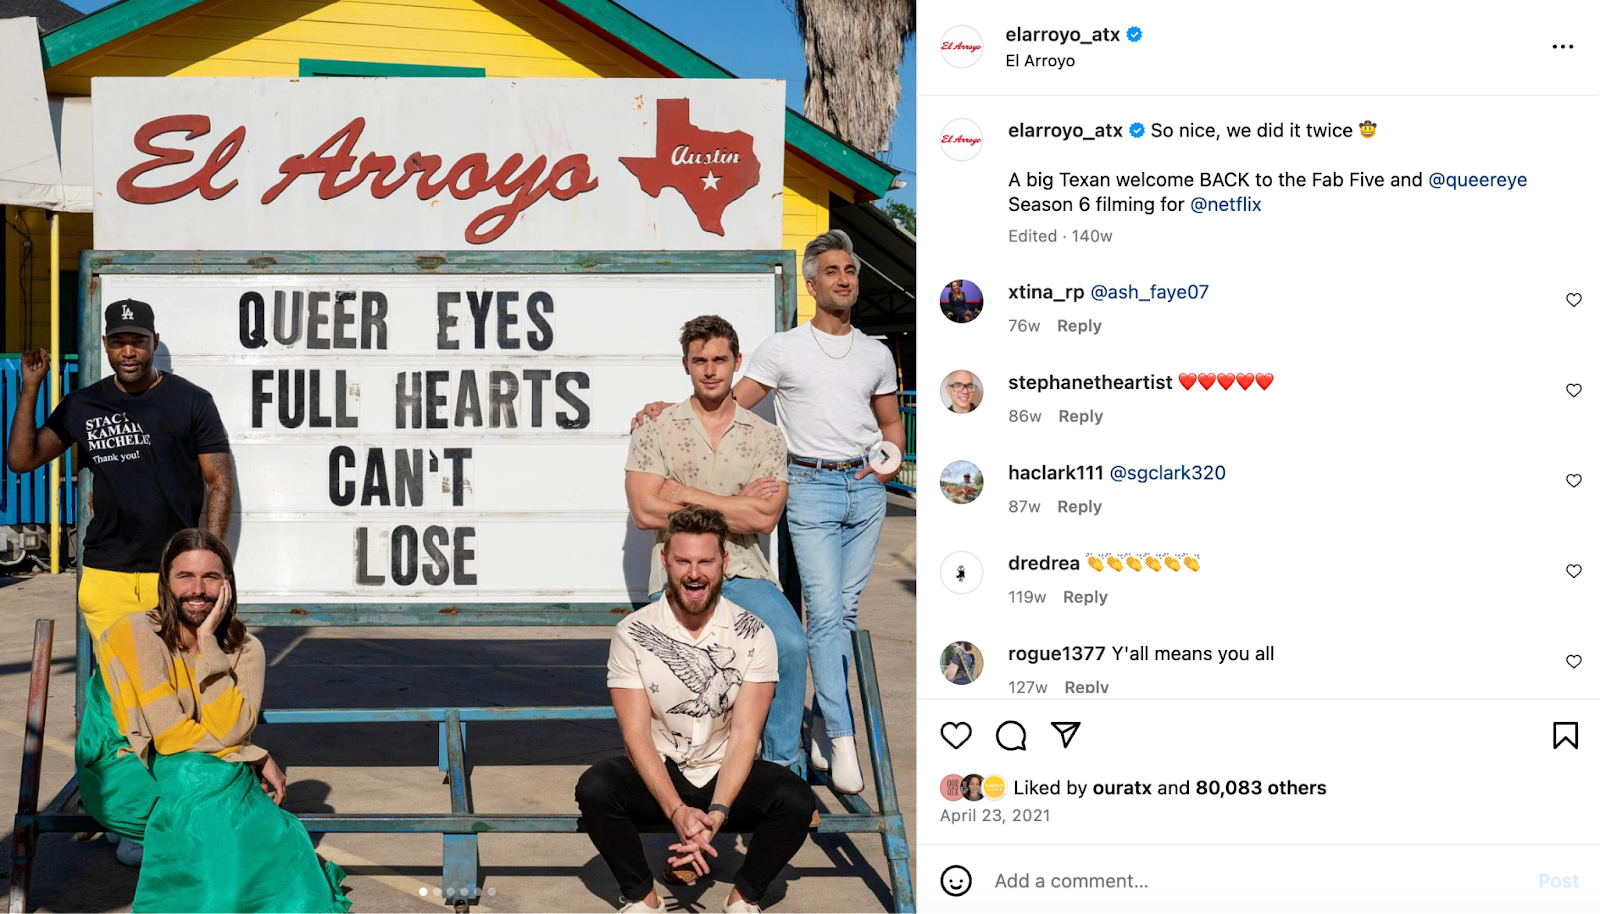 Idei creative de marketing pentru restaurante: Distribuția lui Queer Eye pozează în fața semnului marcajului lui El Arroyo pentru a promova spectacolul.